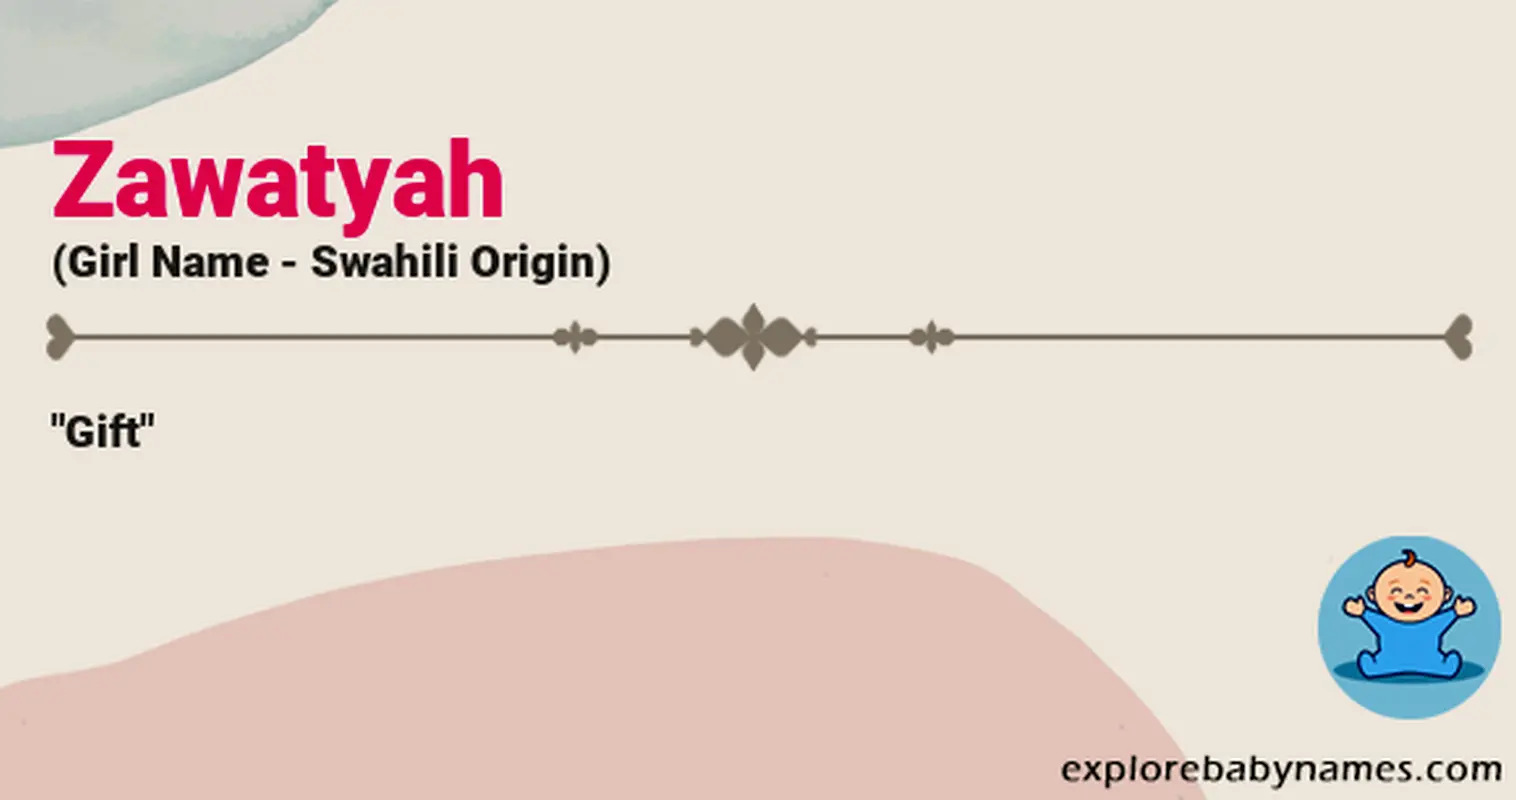 Meaning of Zawatyah